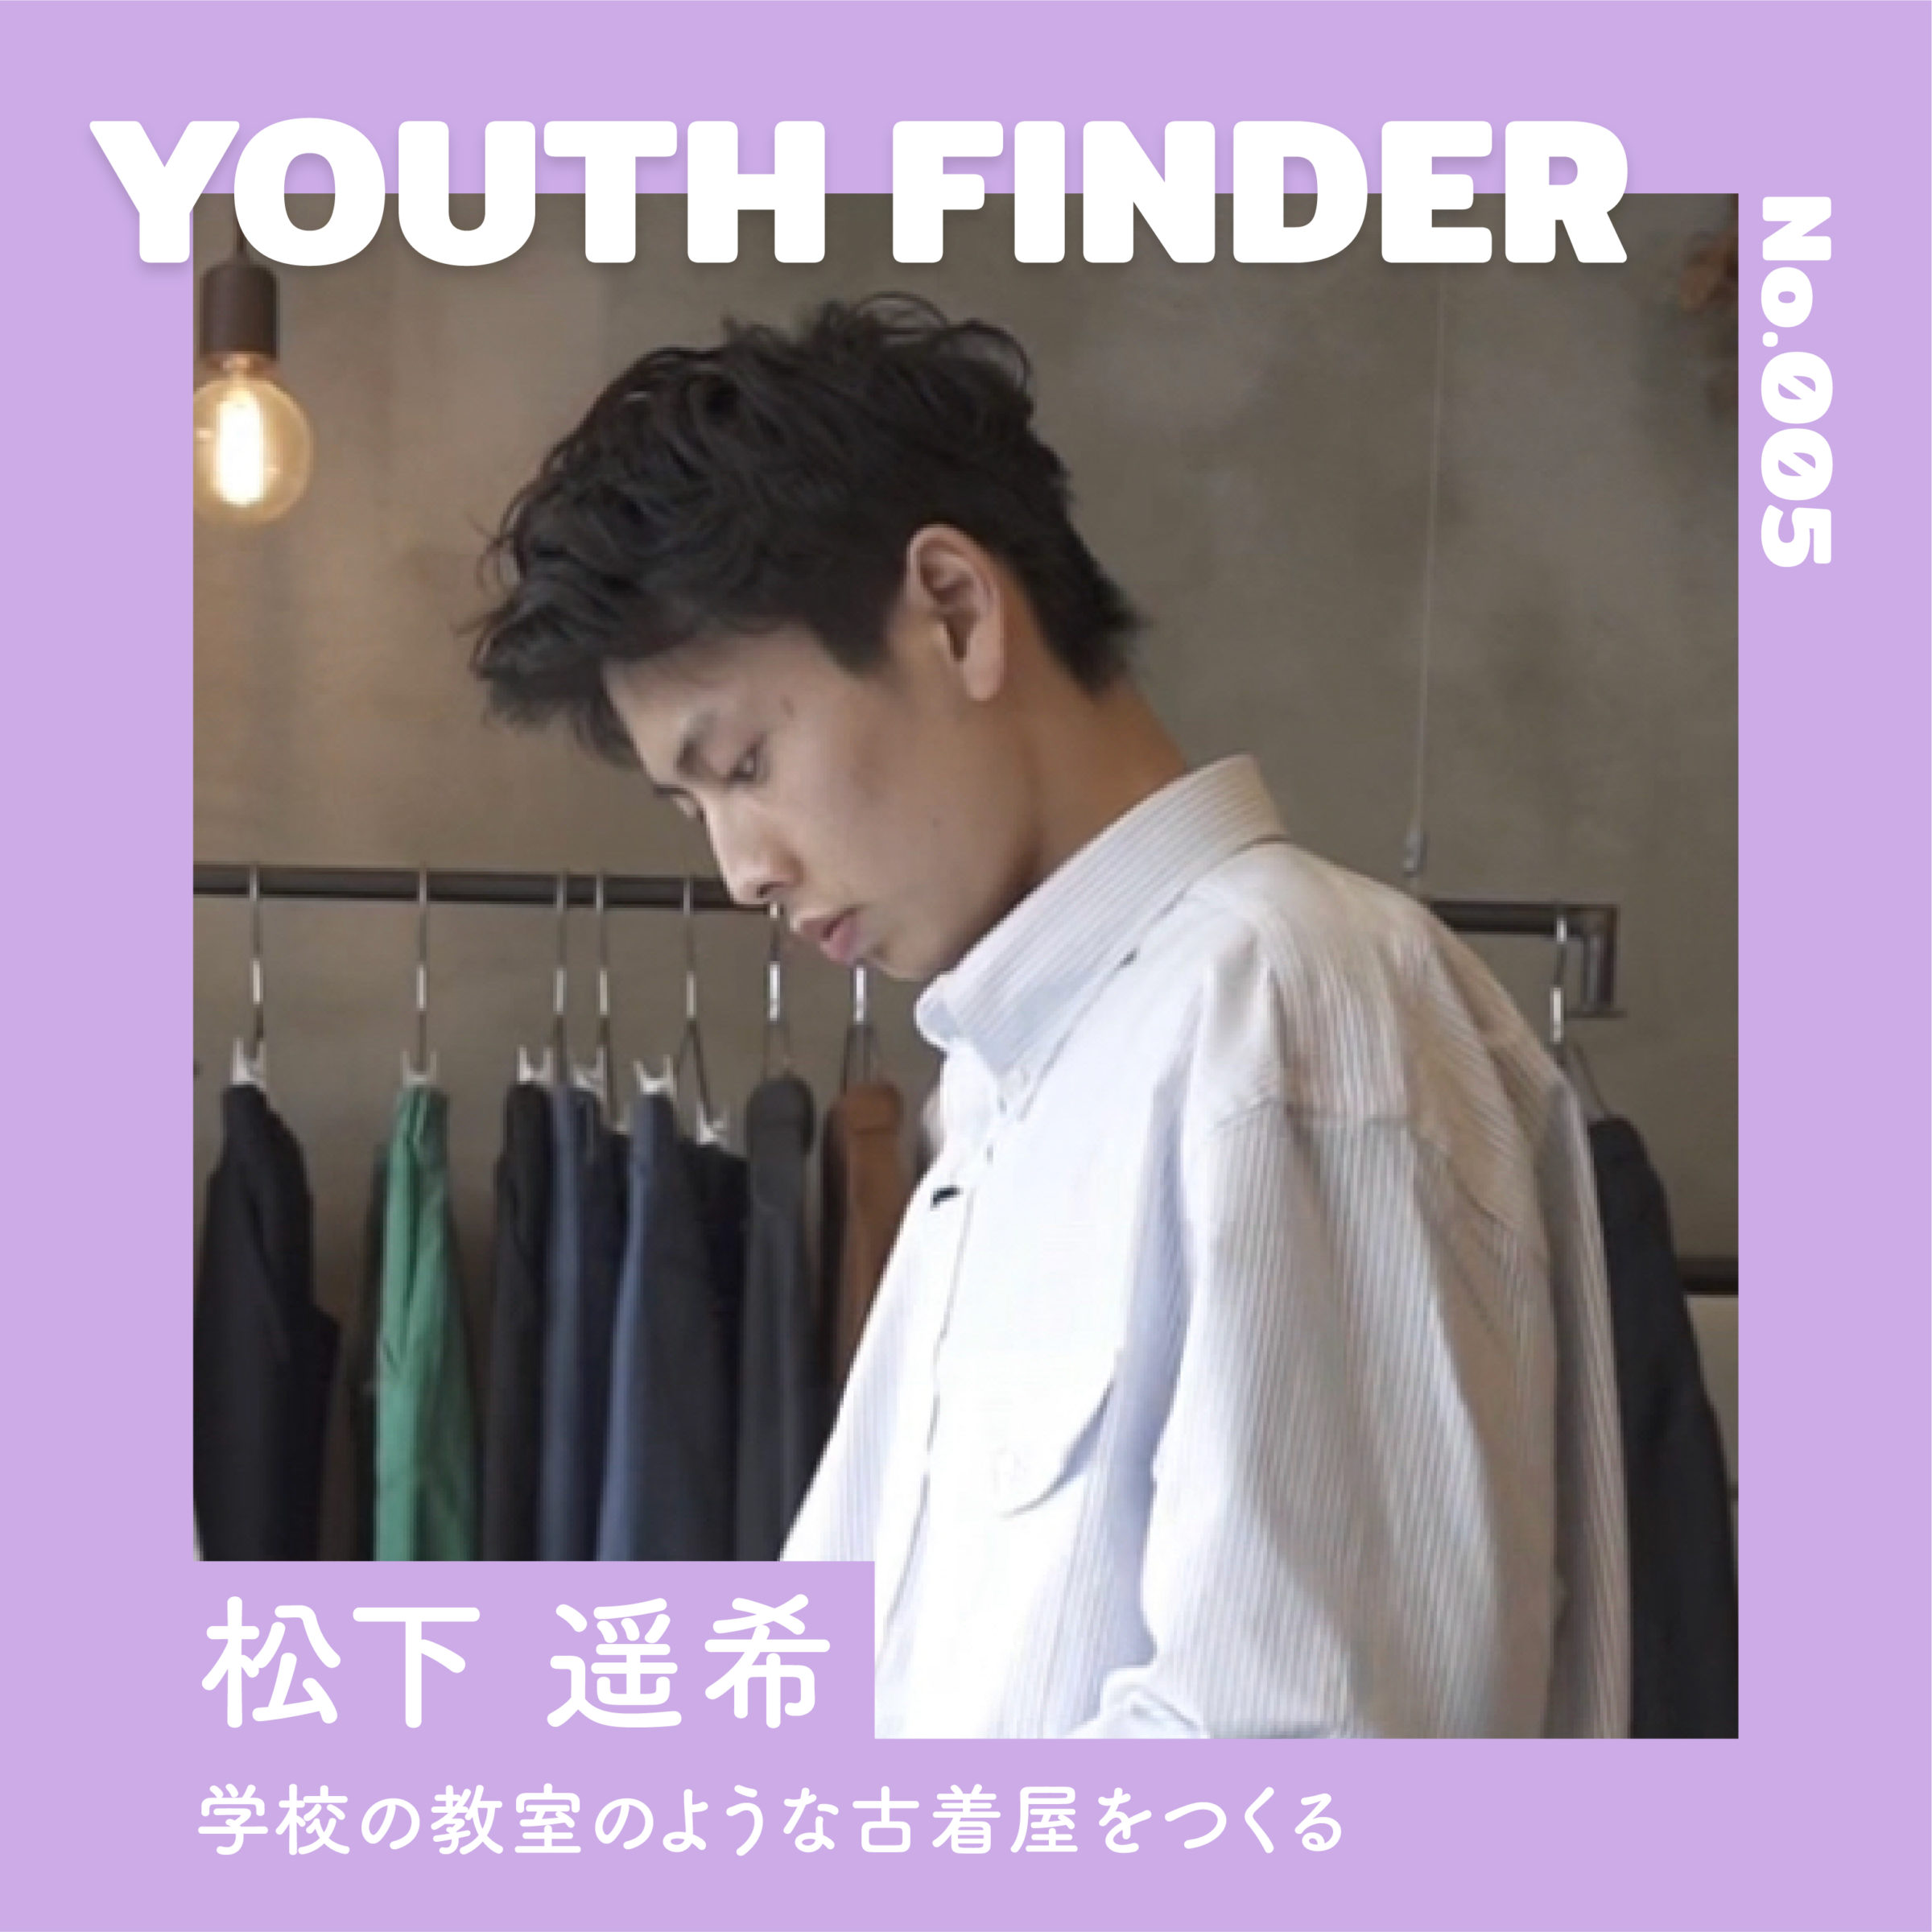 学校の教室のような古着屋をつくる 松下遥希さん【Youth Finder】の画像